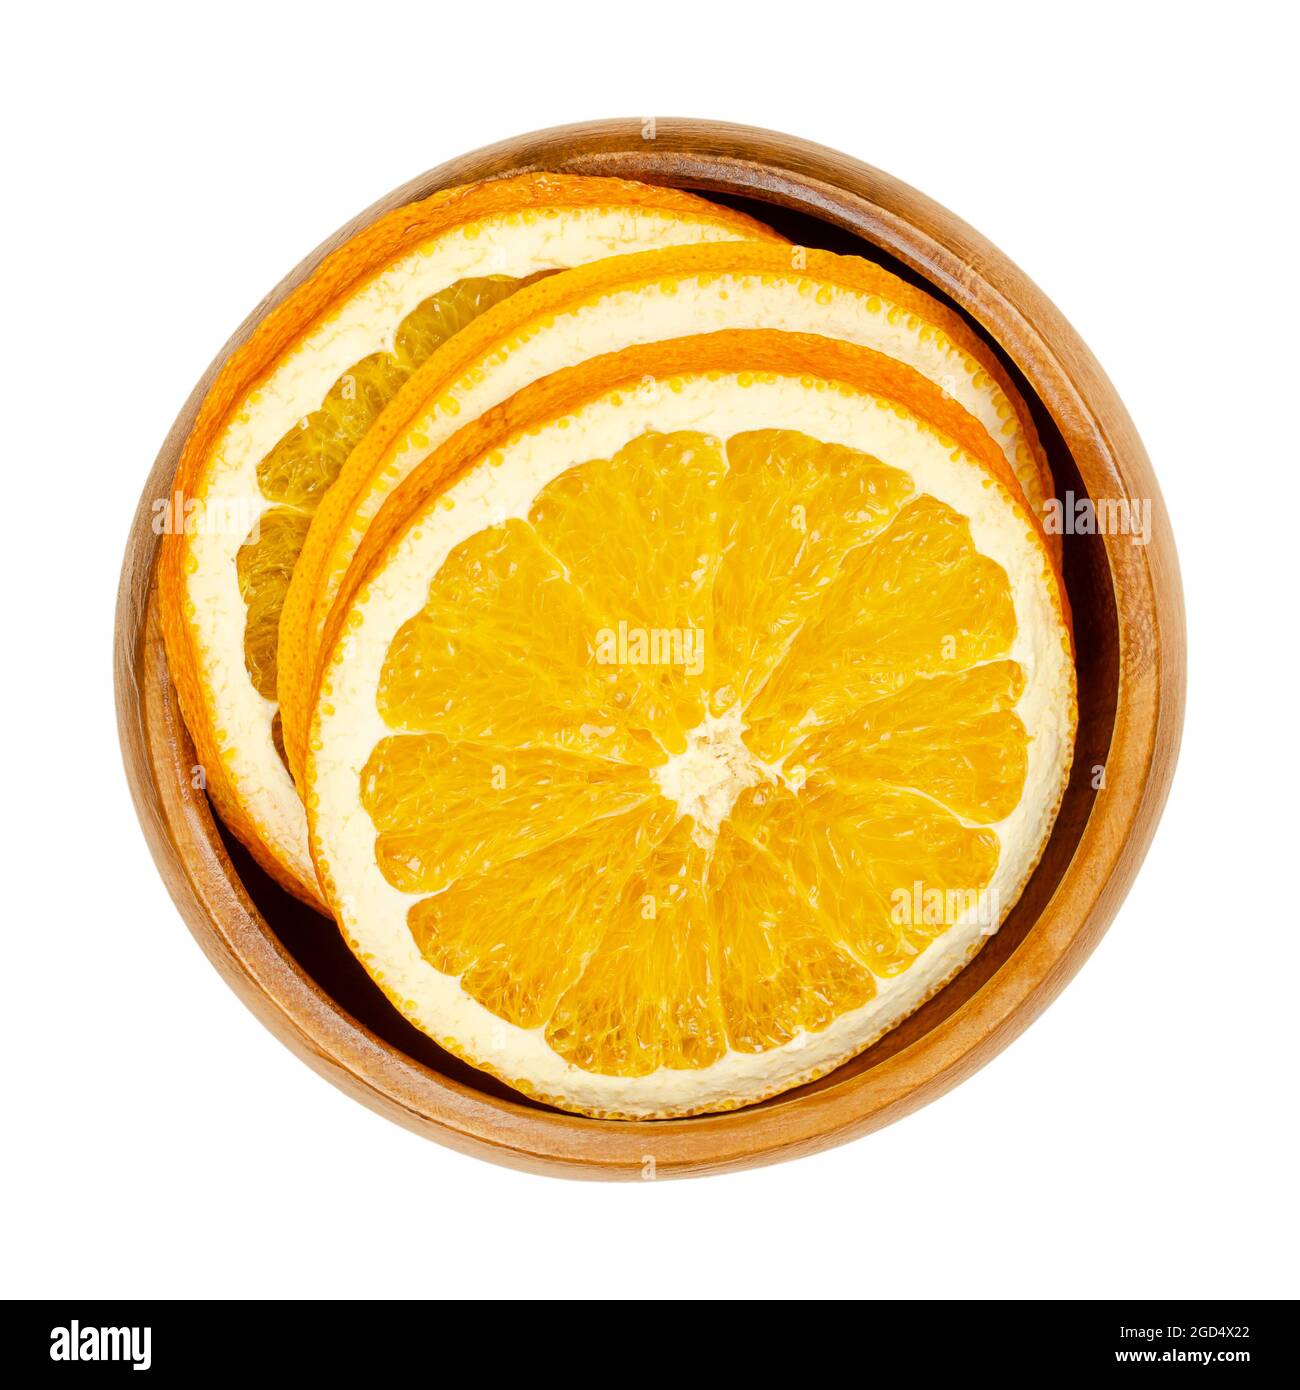 Getrocknete Orangenscheiben in einer Holzschale. Orangen, in Querschnitte geschnitten, in Scheiben geschnittene Früchte, als aromatisch riechende Weihnachtsdekoration verwendet. Stockfoto